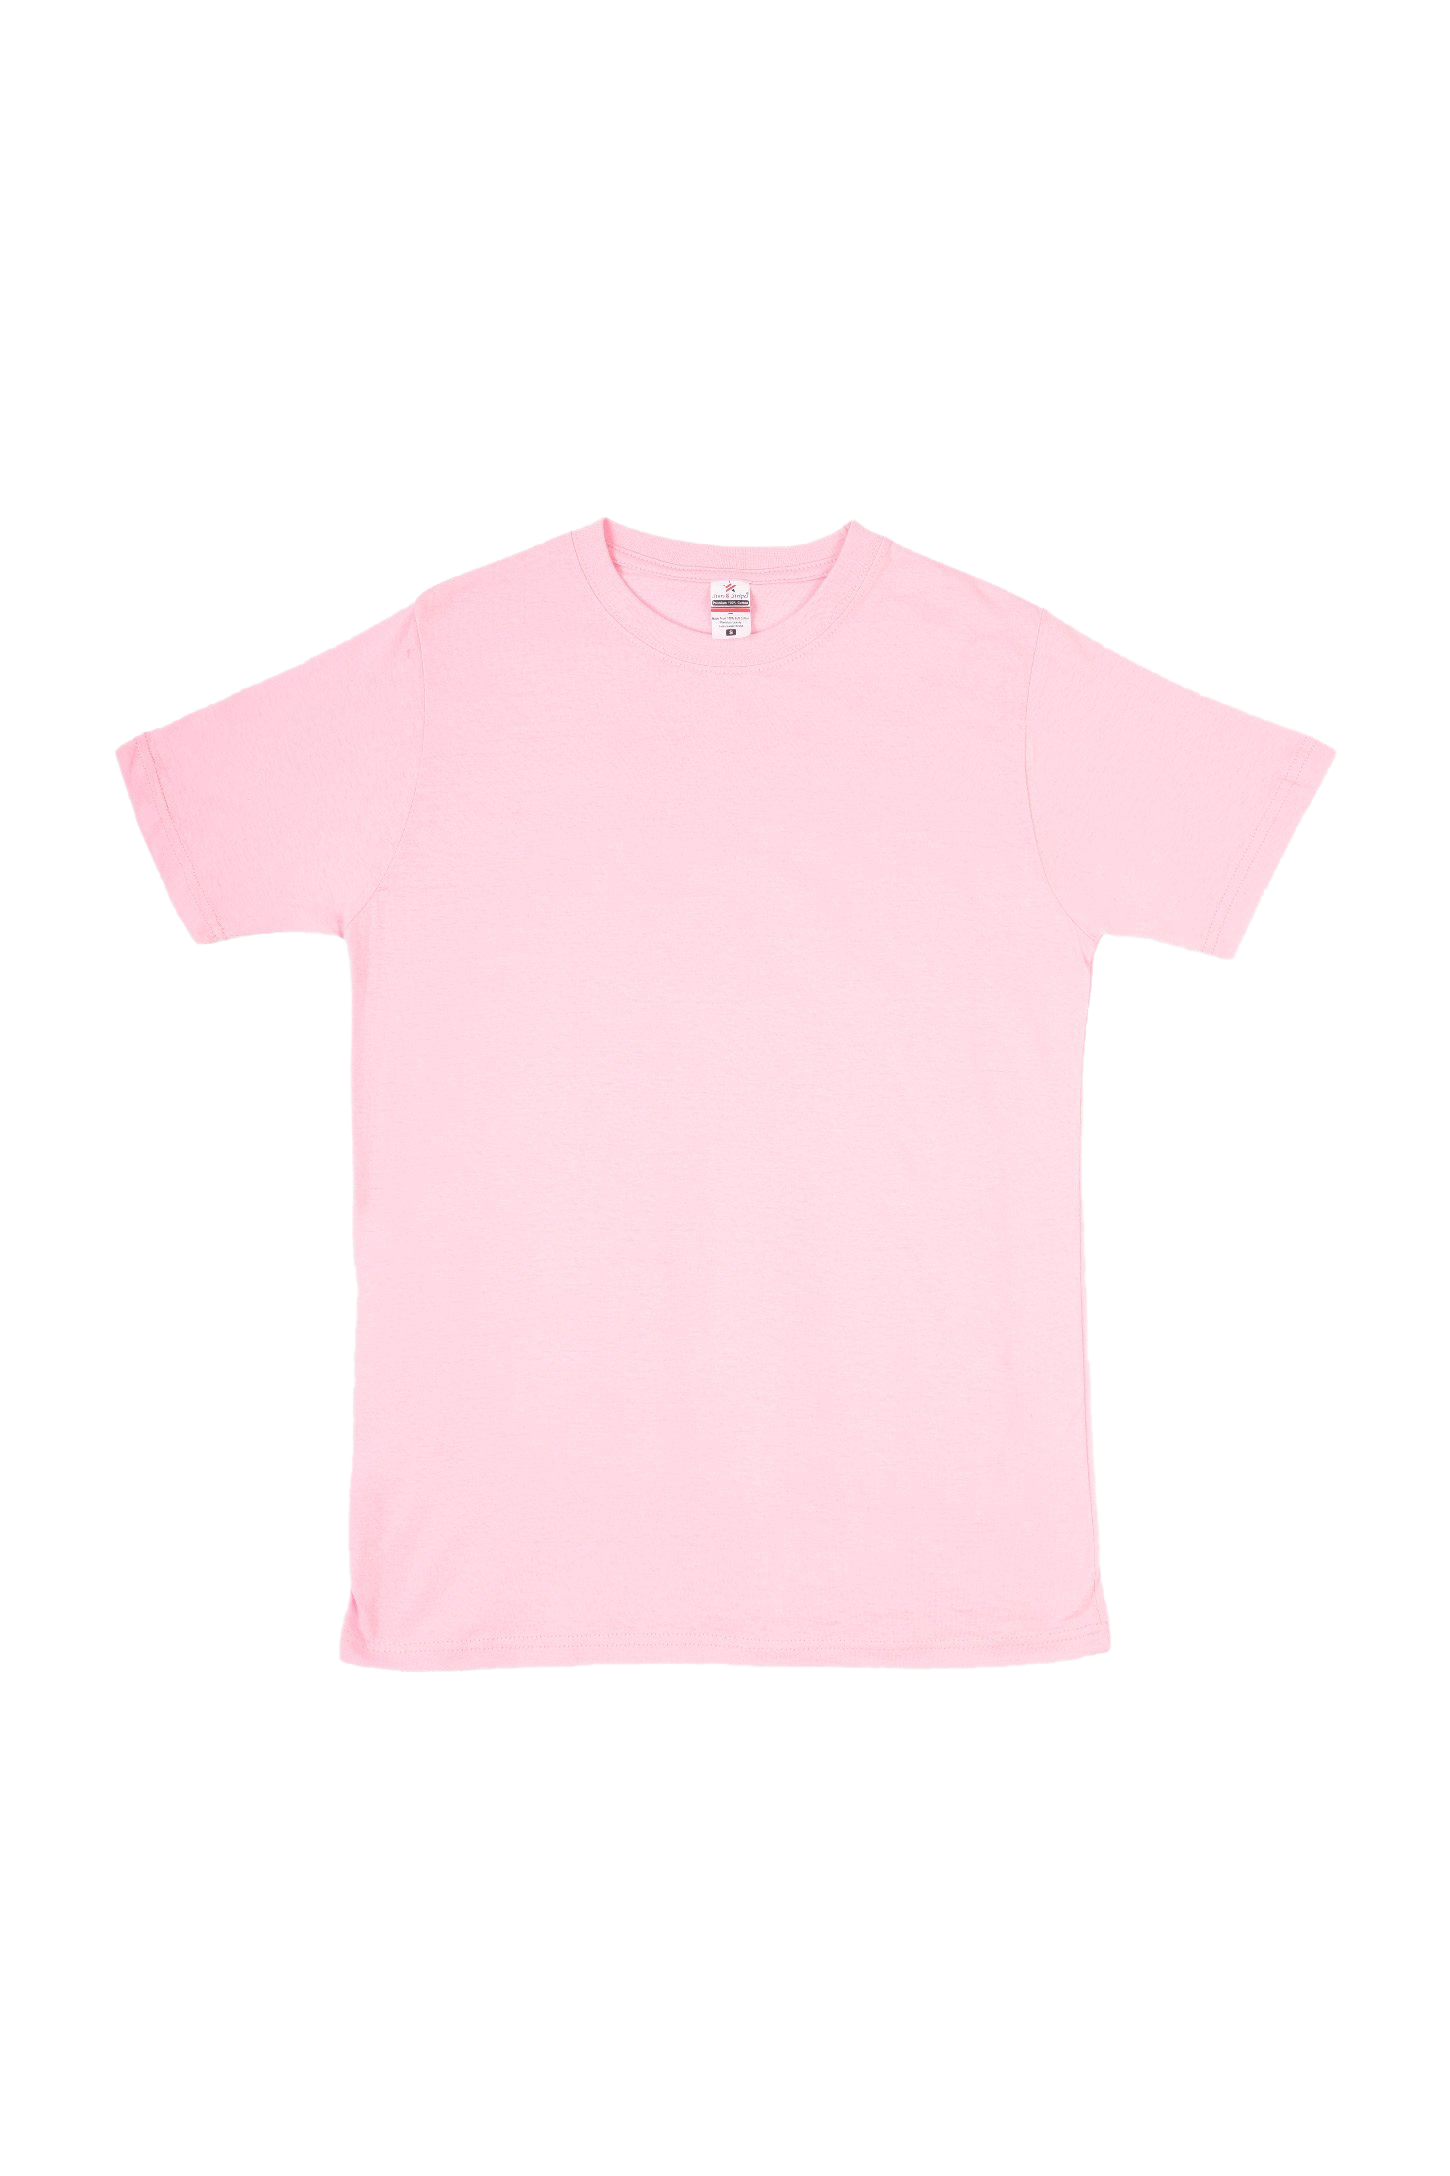 T-shirt rose simple PNG Image de haute qualité